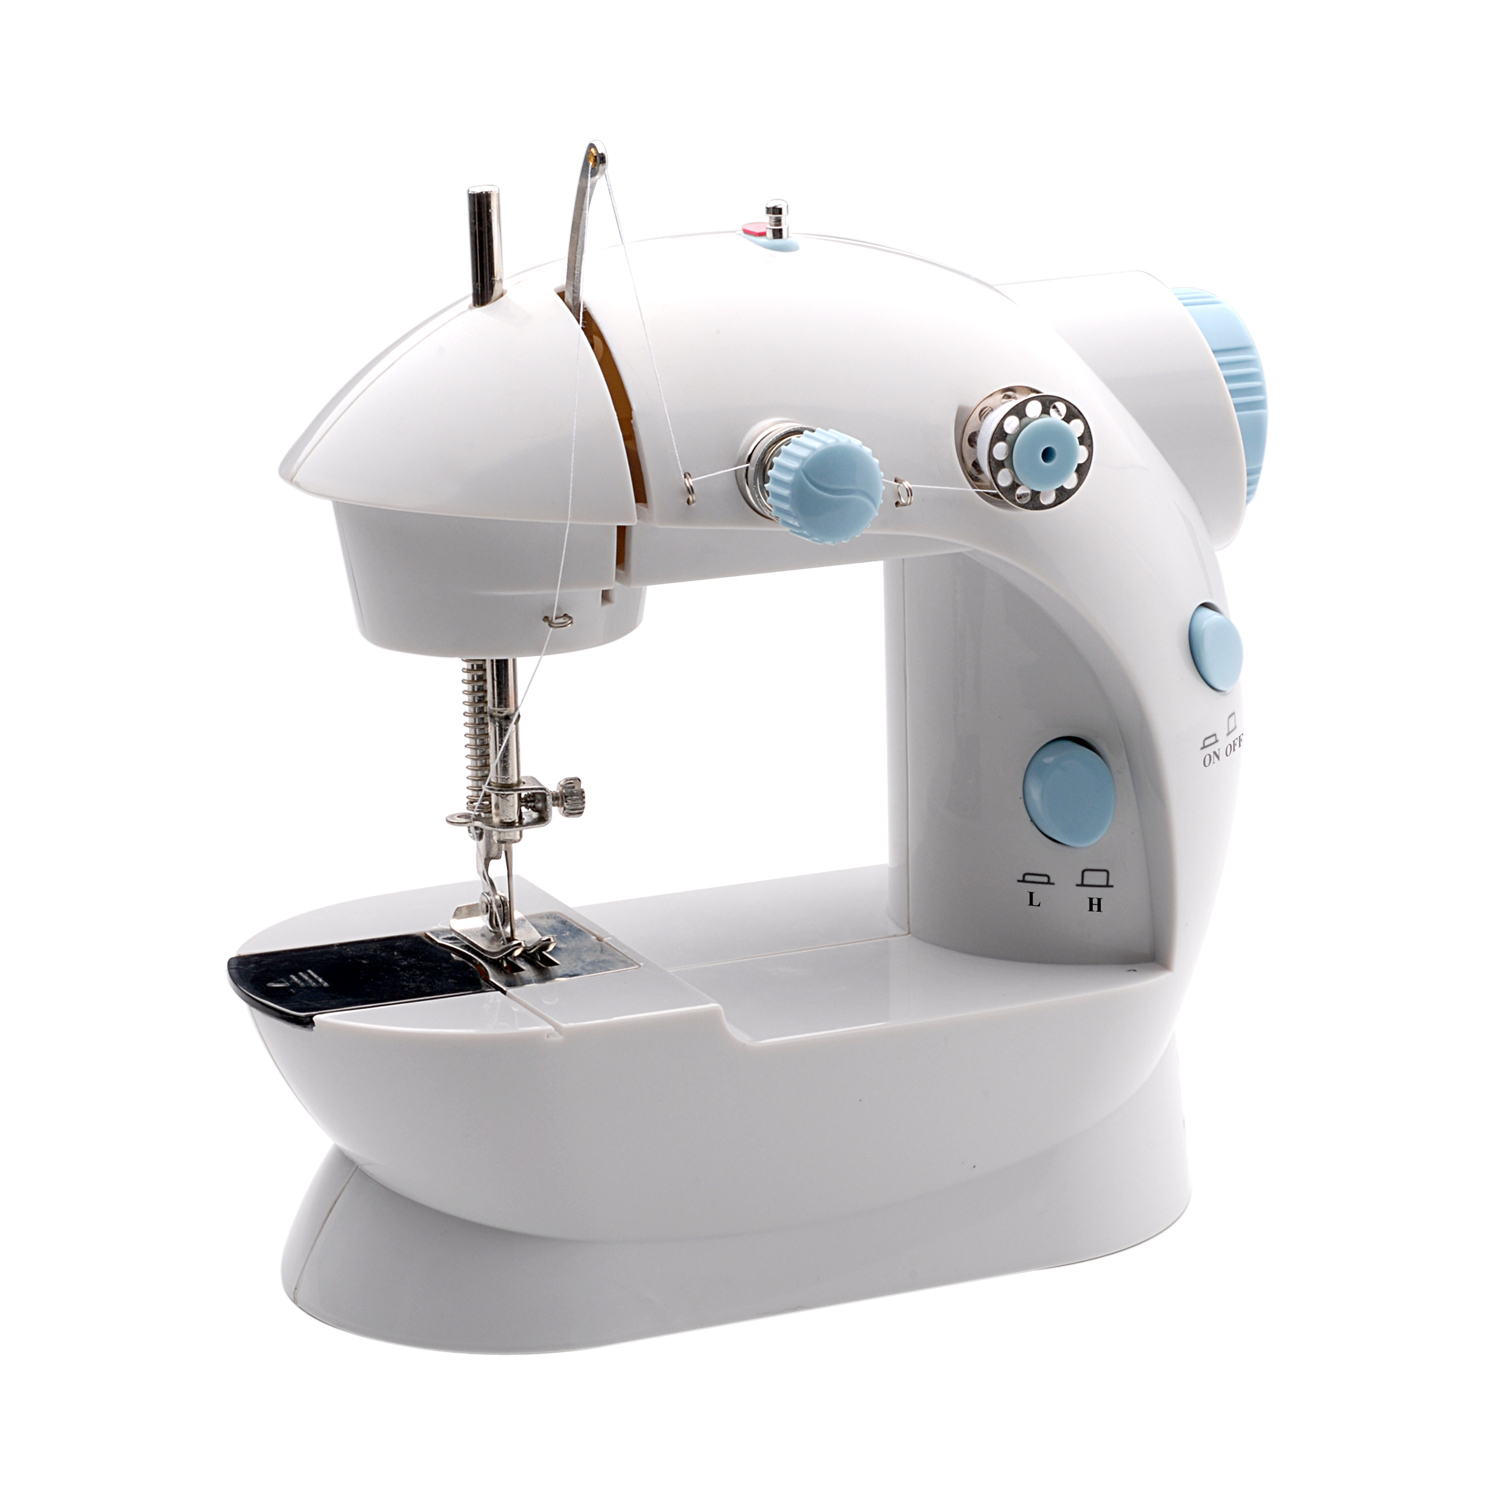 SEW & SEW LSS-202 Mini Sewing Machine